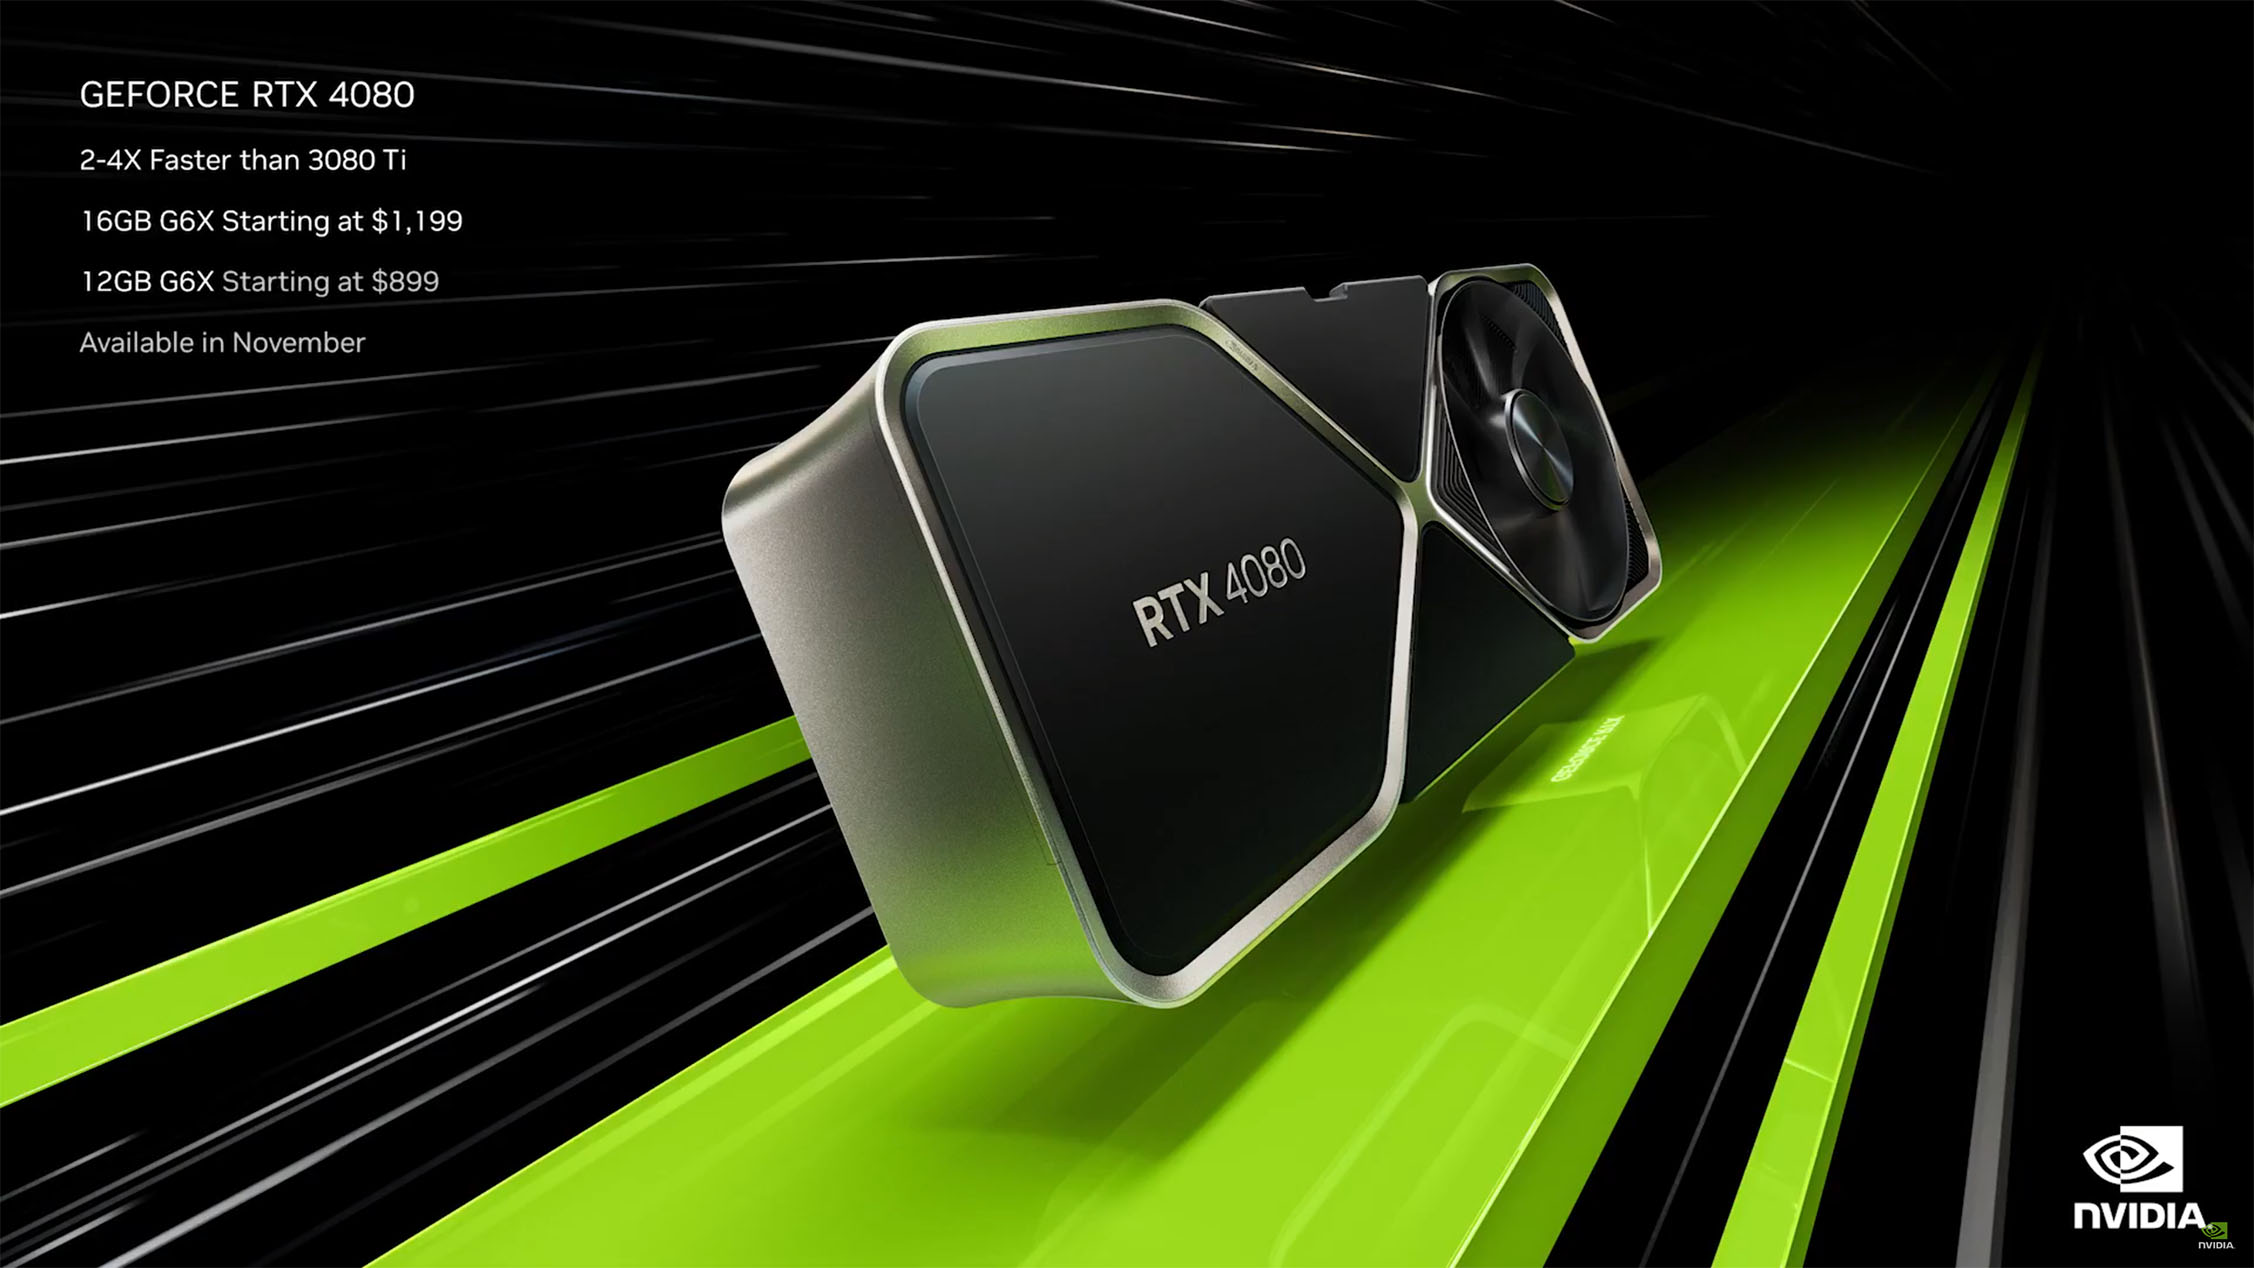 RTX 4080 16GB ra mắt ngày 16/11, sẽ không có bản 12GB giá 899 USD nữa